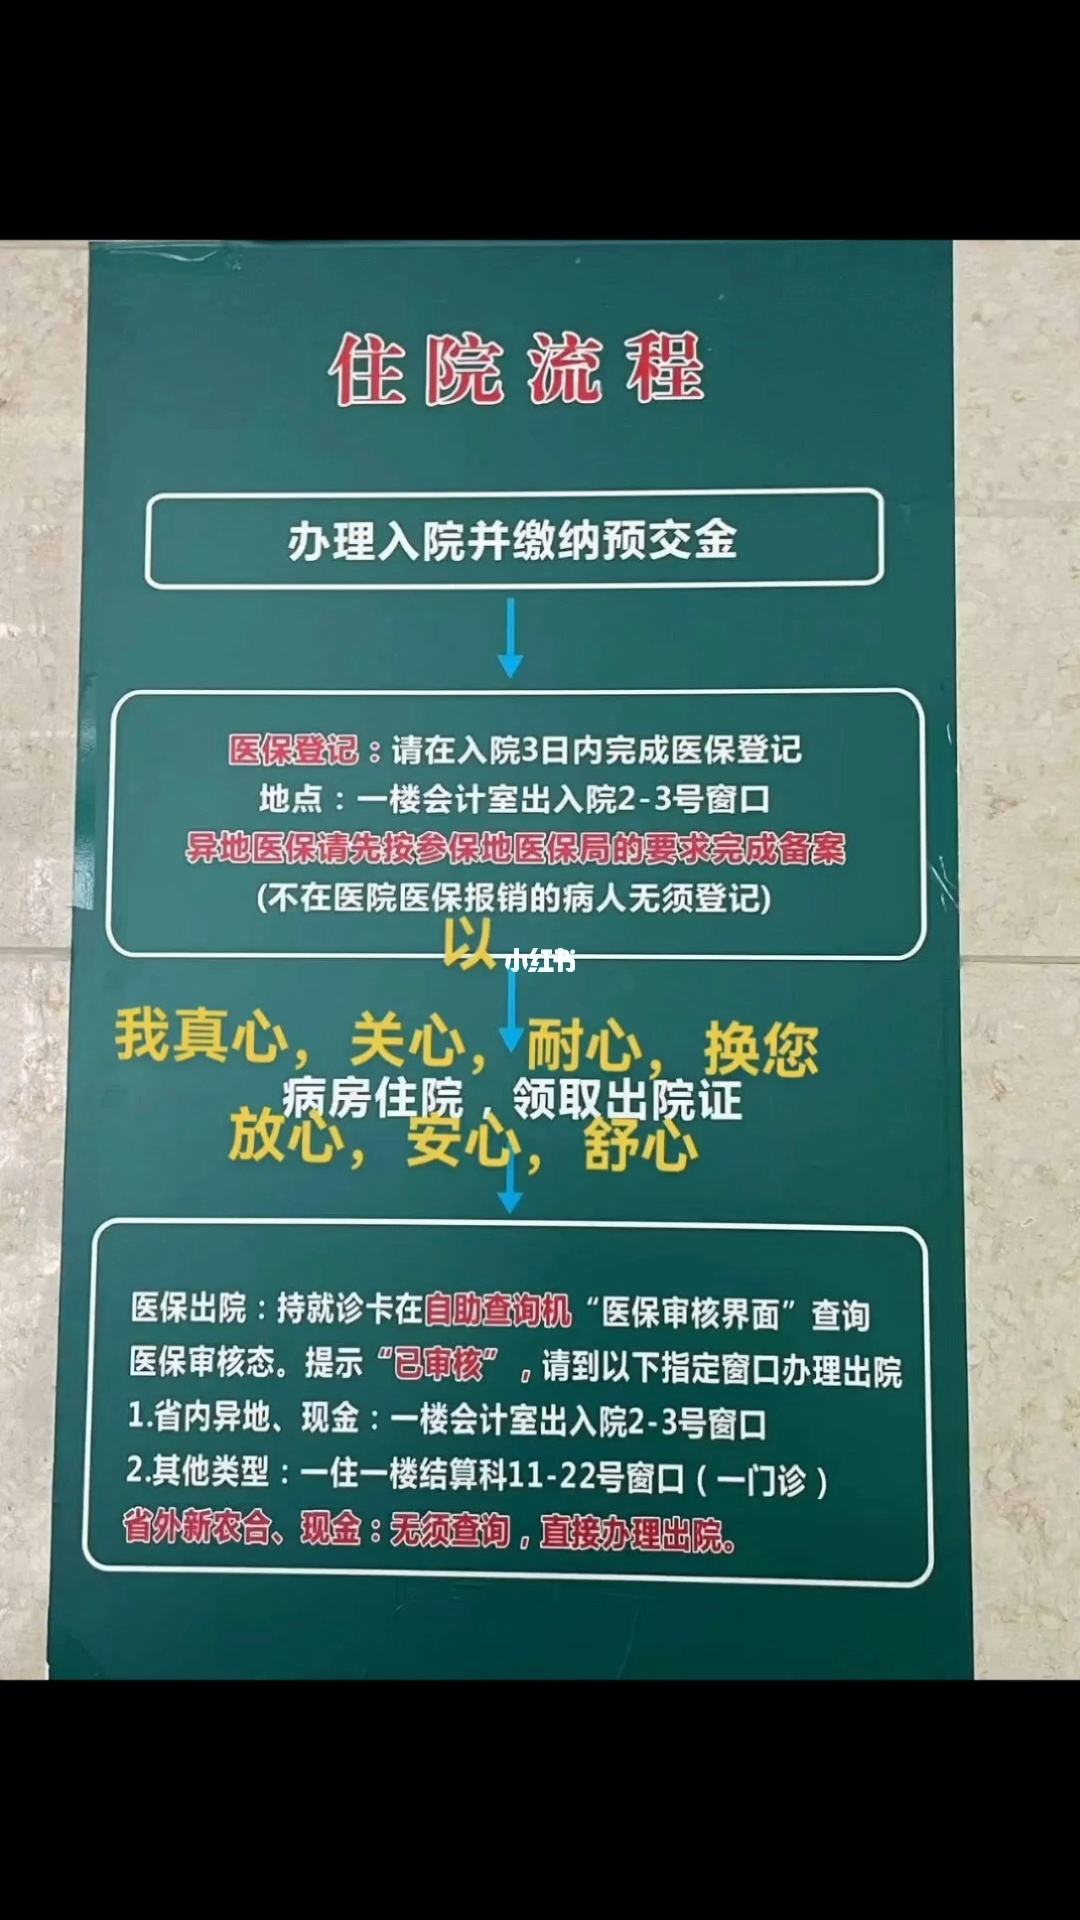 关于中国人民武装警察边防部队总医院医院陪诊代挂，京医指导就医分享的信息